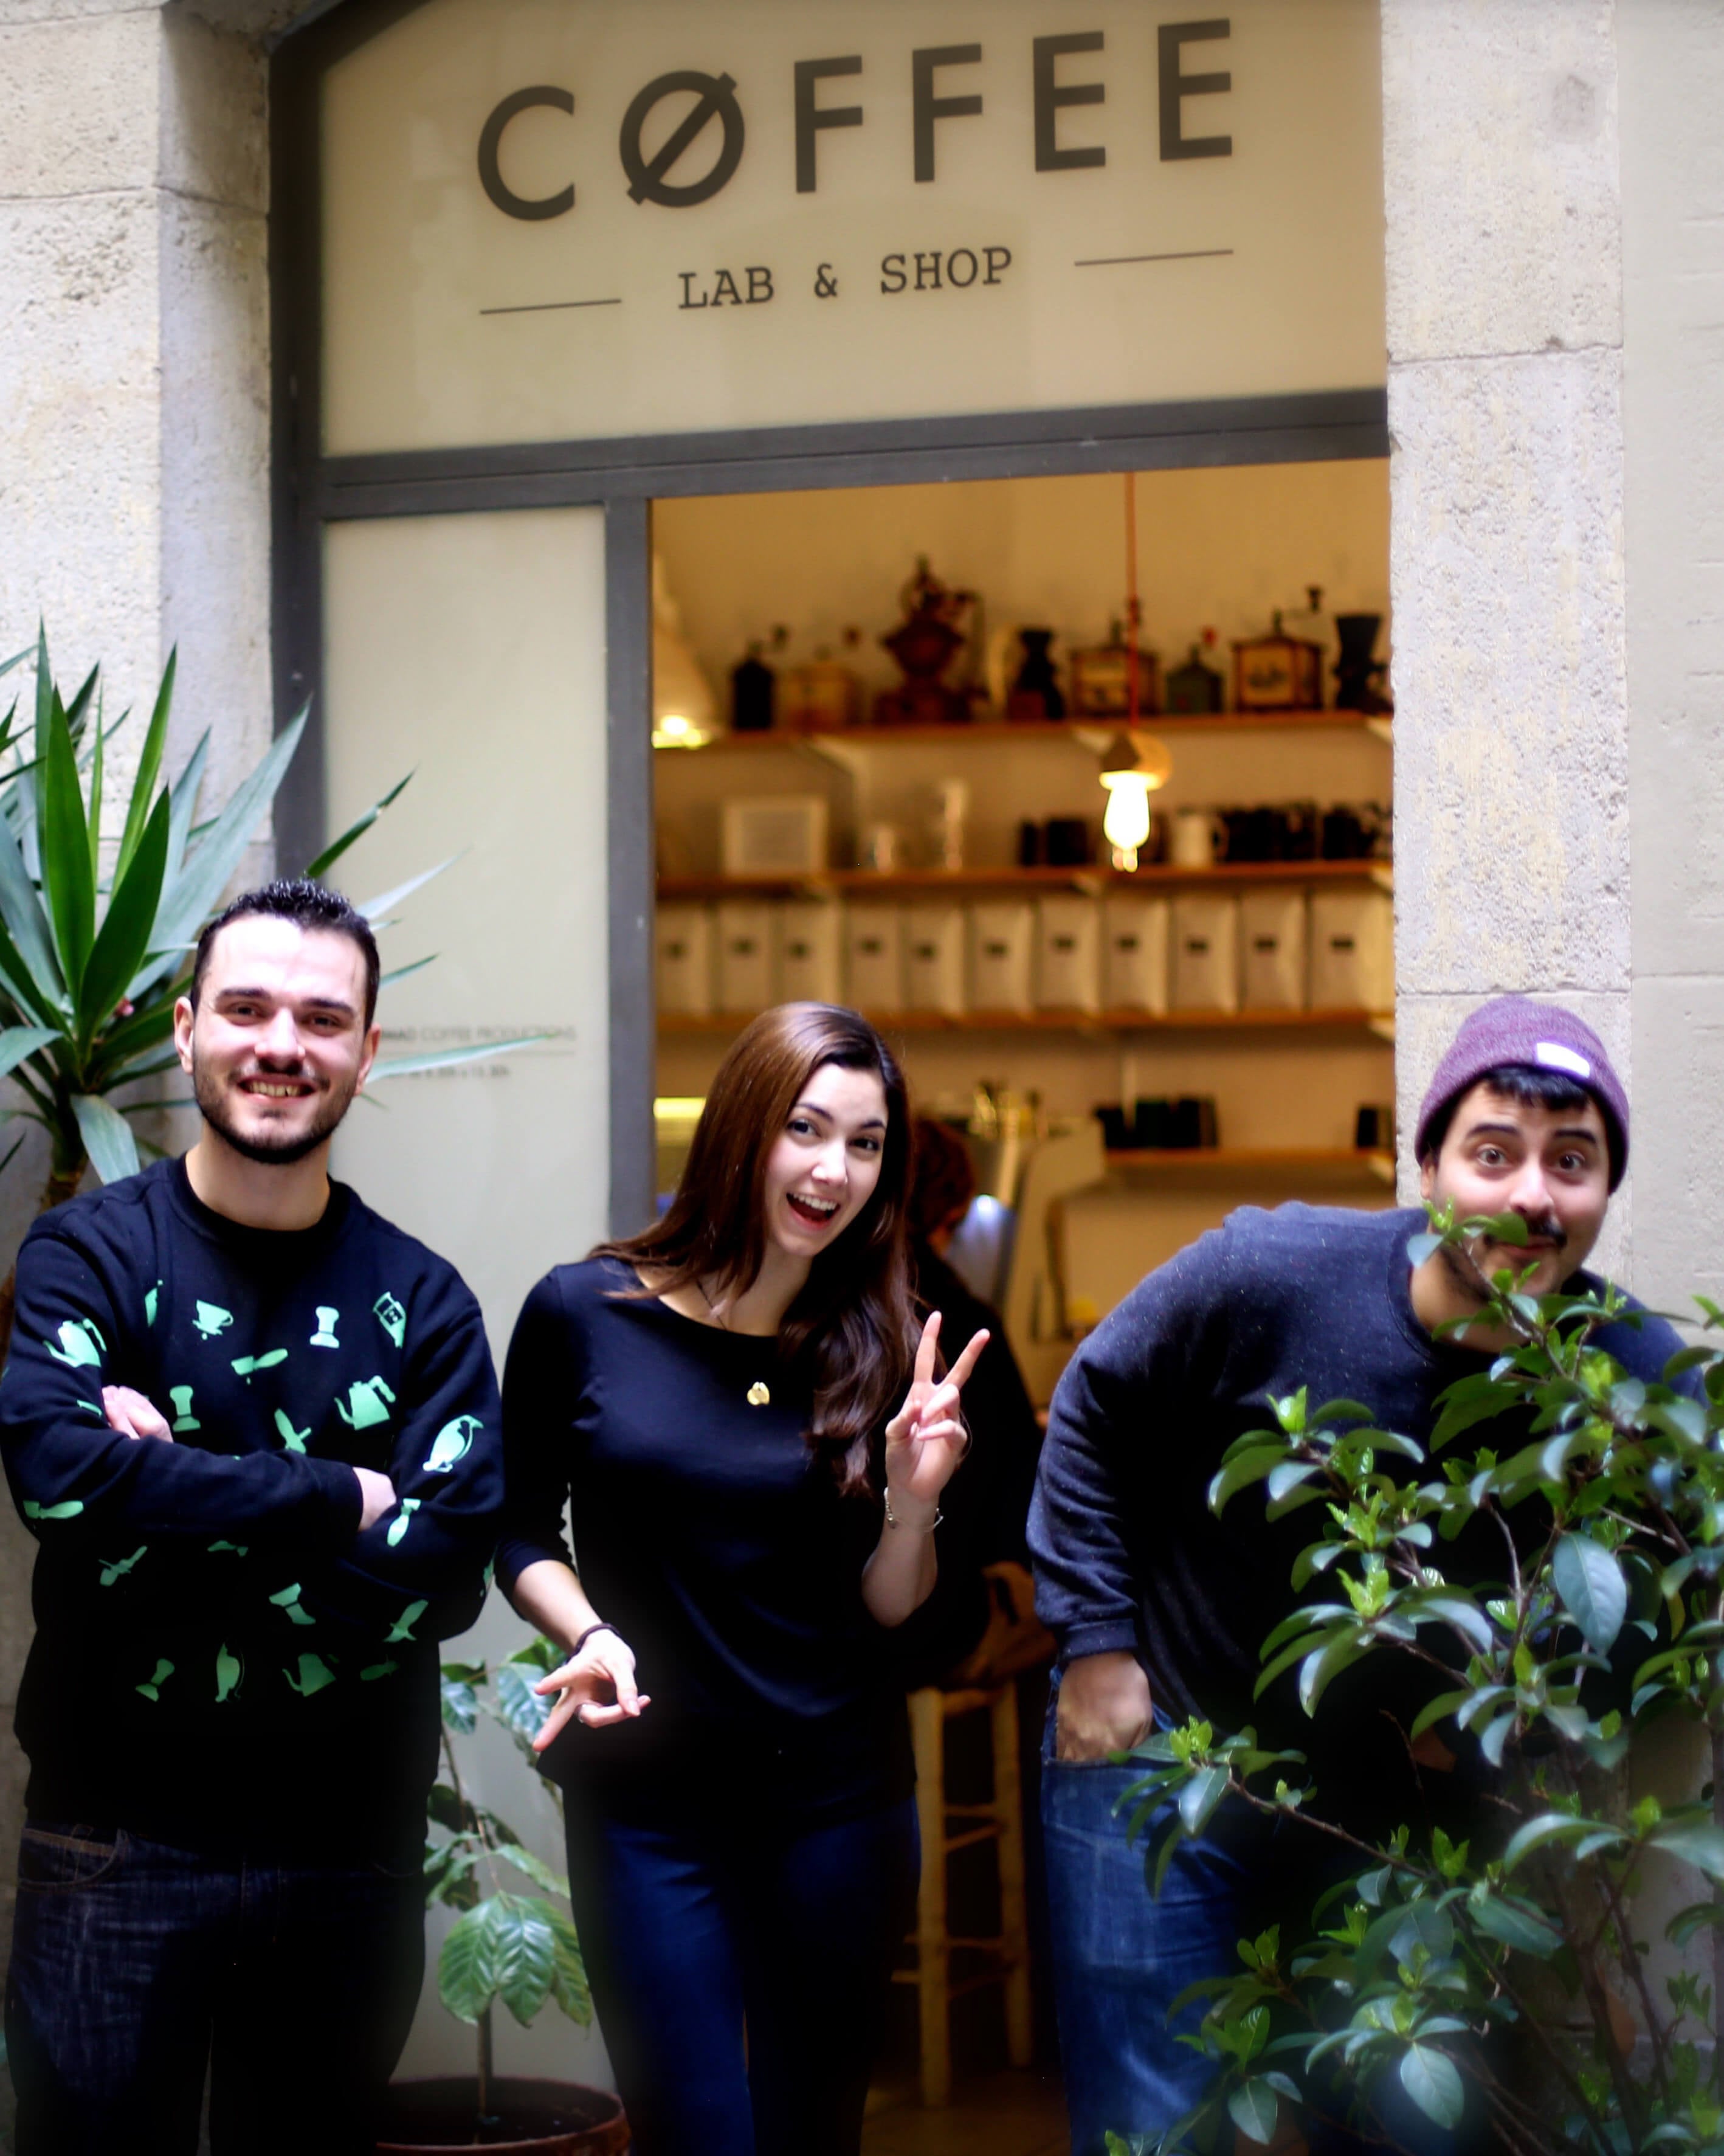 Delante del portal de Nomad Coffee Lab & Shop aparecen, de izquierda a derecha: Fran Gonzalez, Monica Mc Coy  y Jordi Mestre riendo junto a unas plantas.